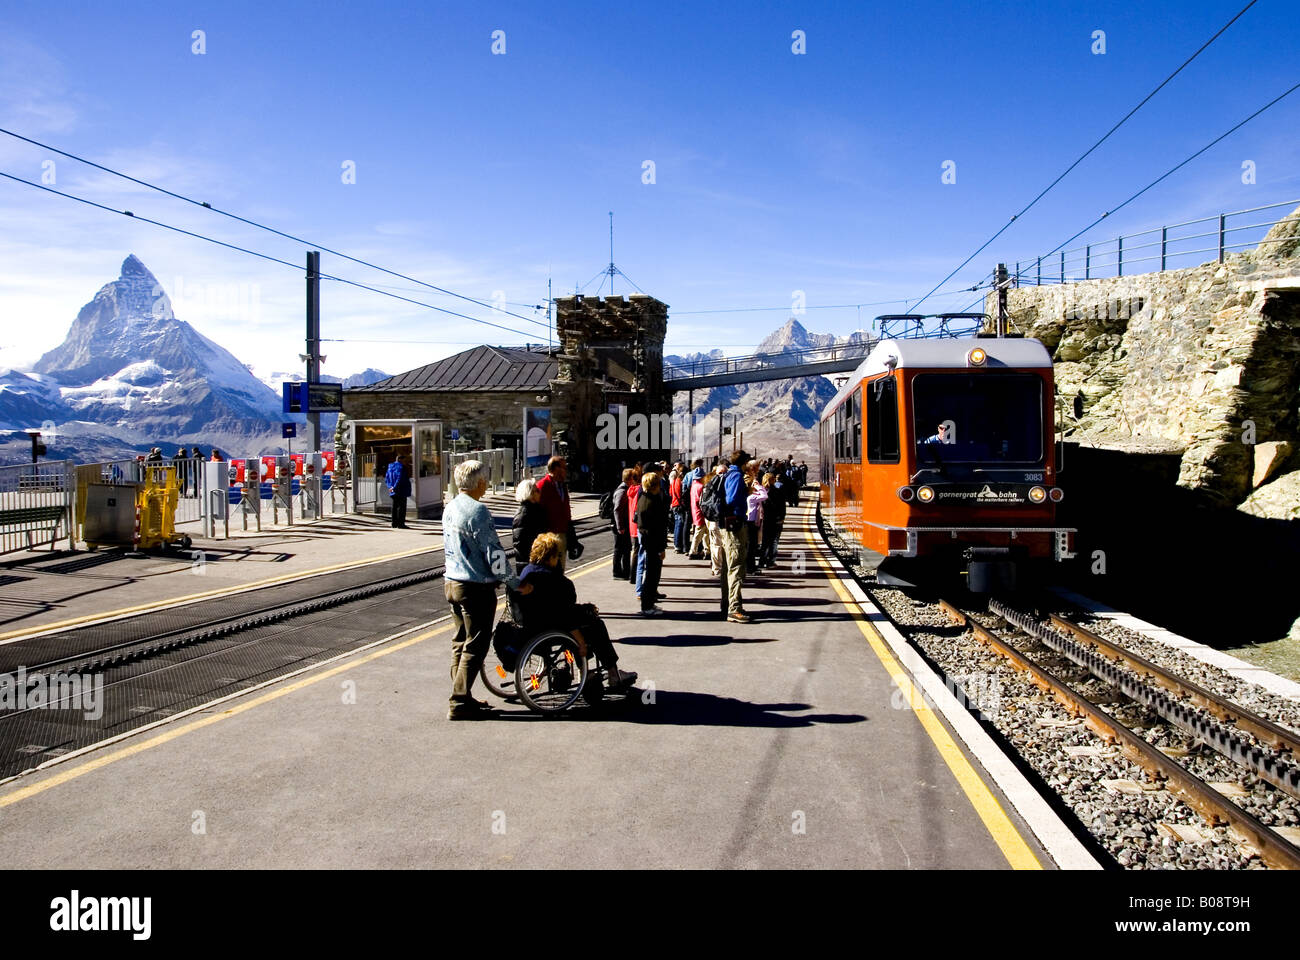 Gornergratbahn, Gornergrat railway in the background Matterhorn, Switzerland Stock Photo